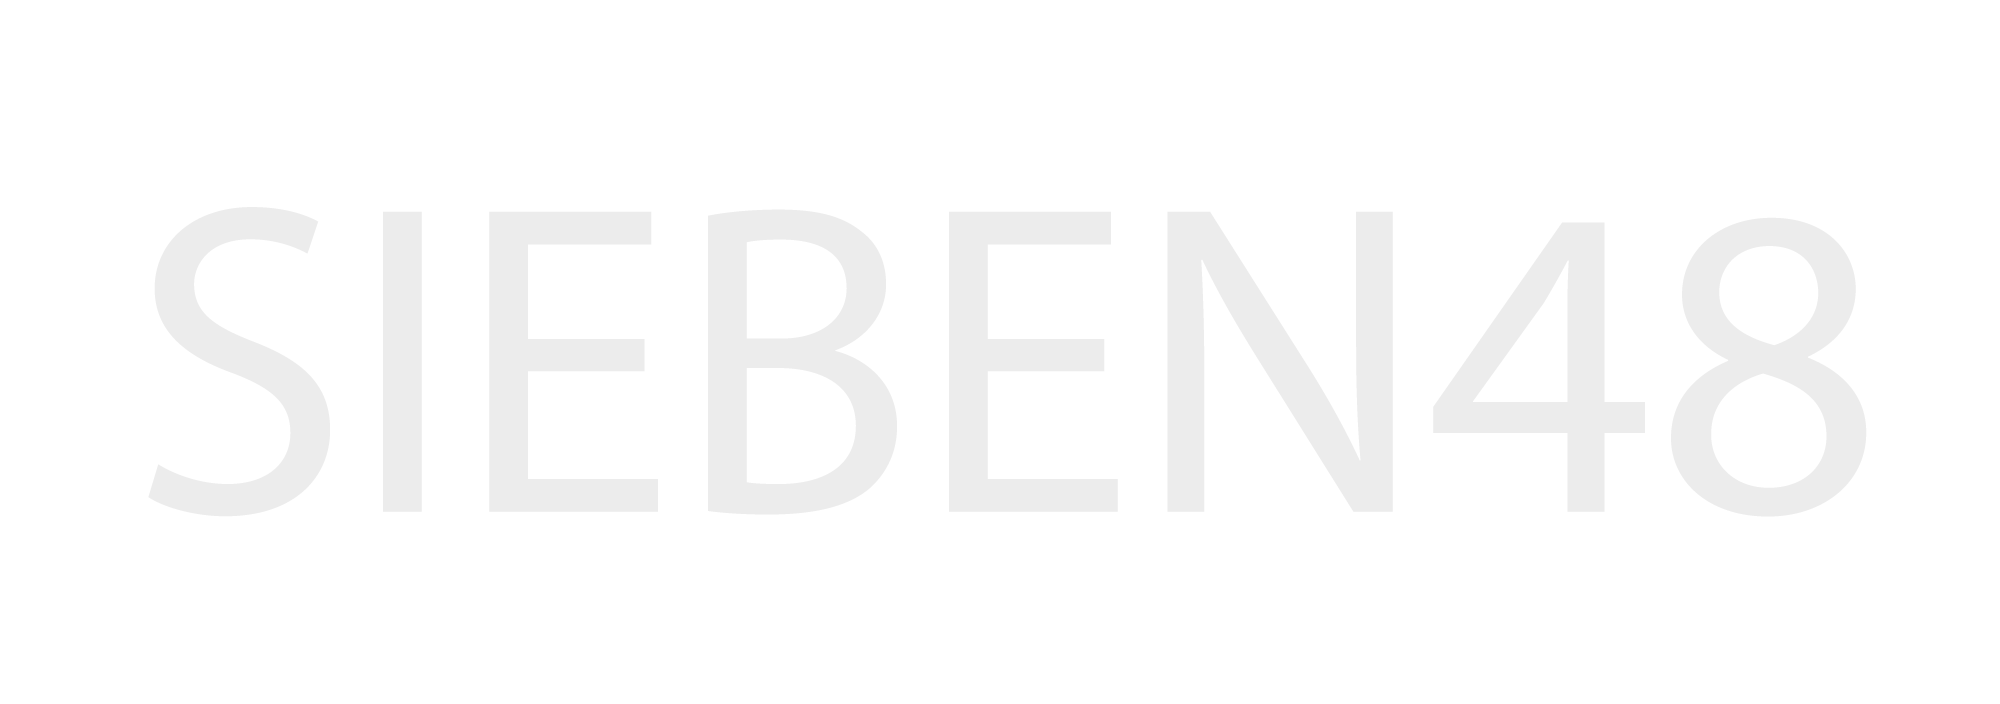 SIEBEN48 logo